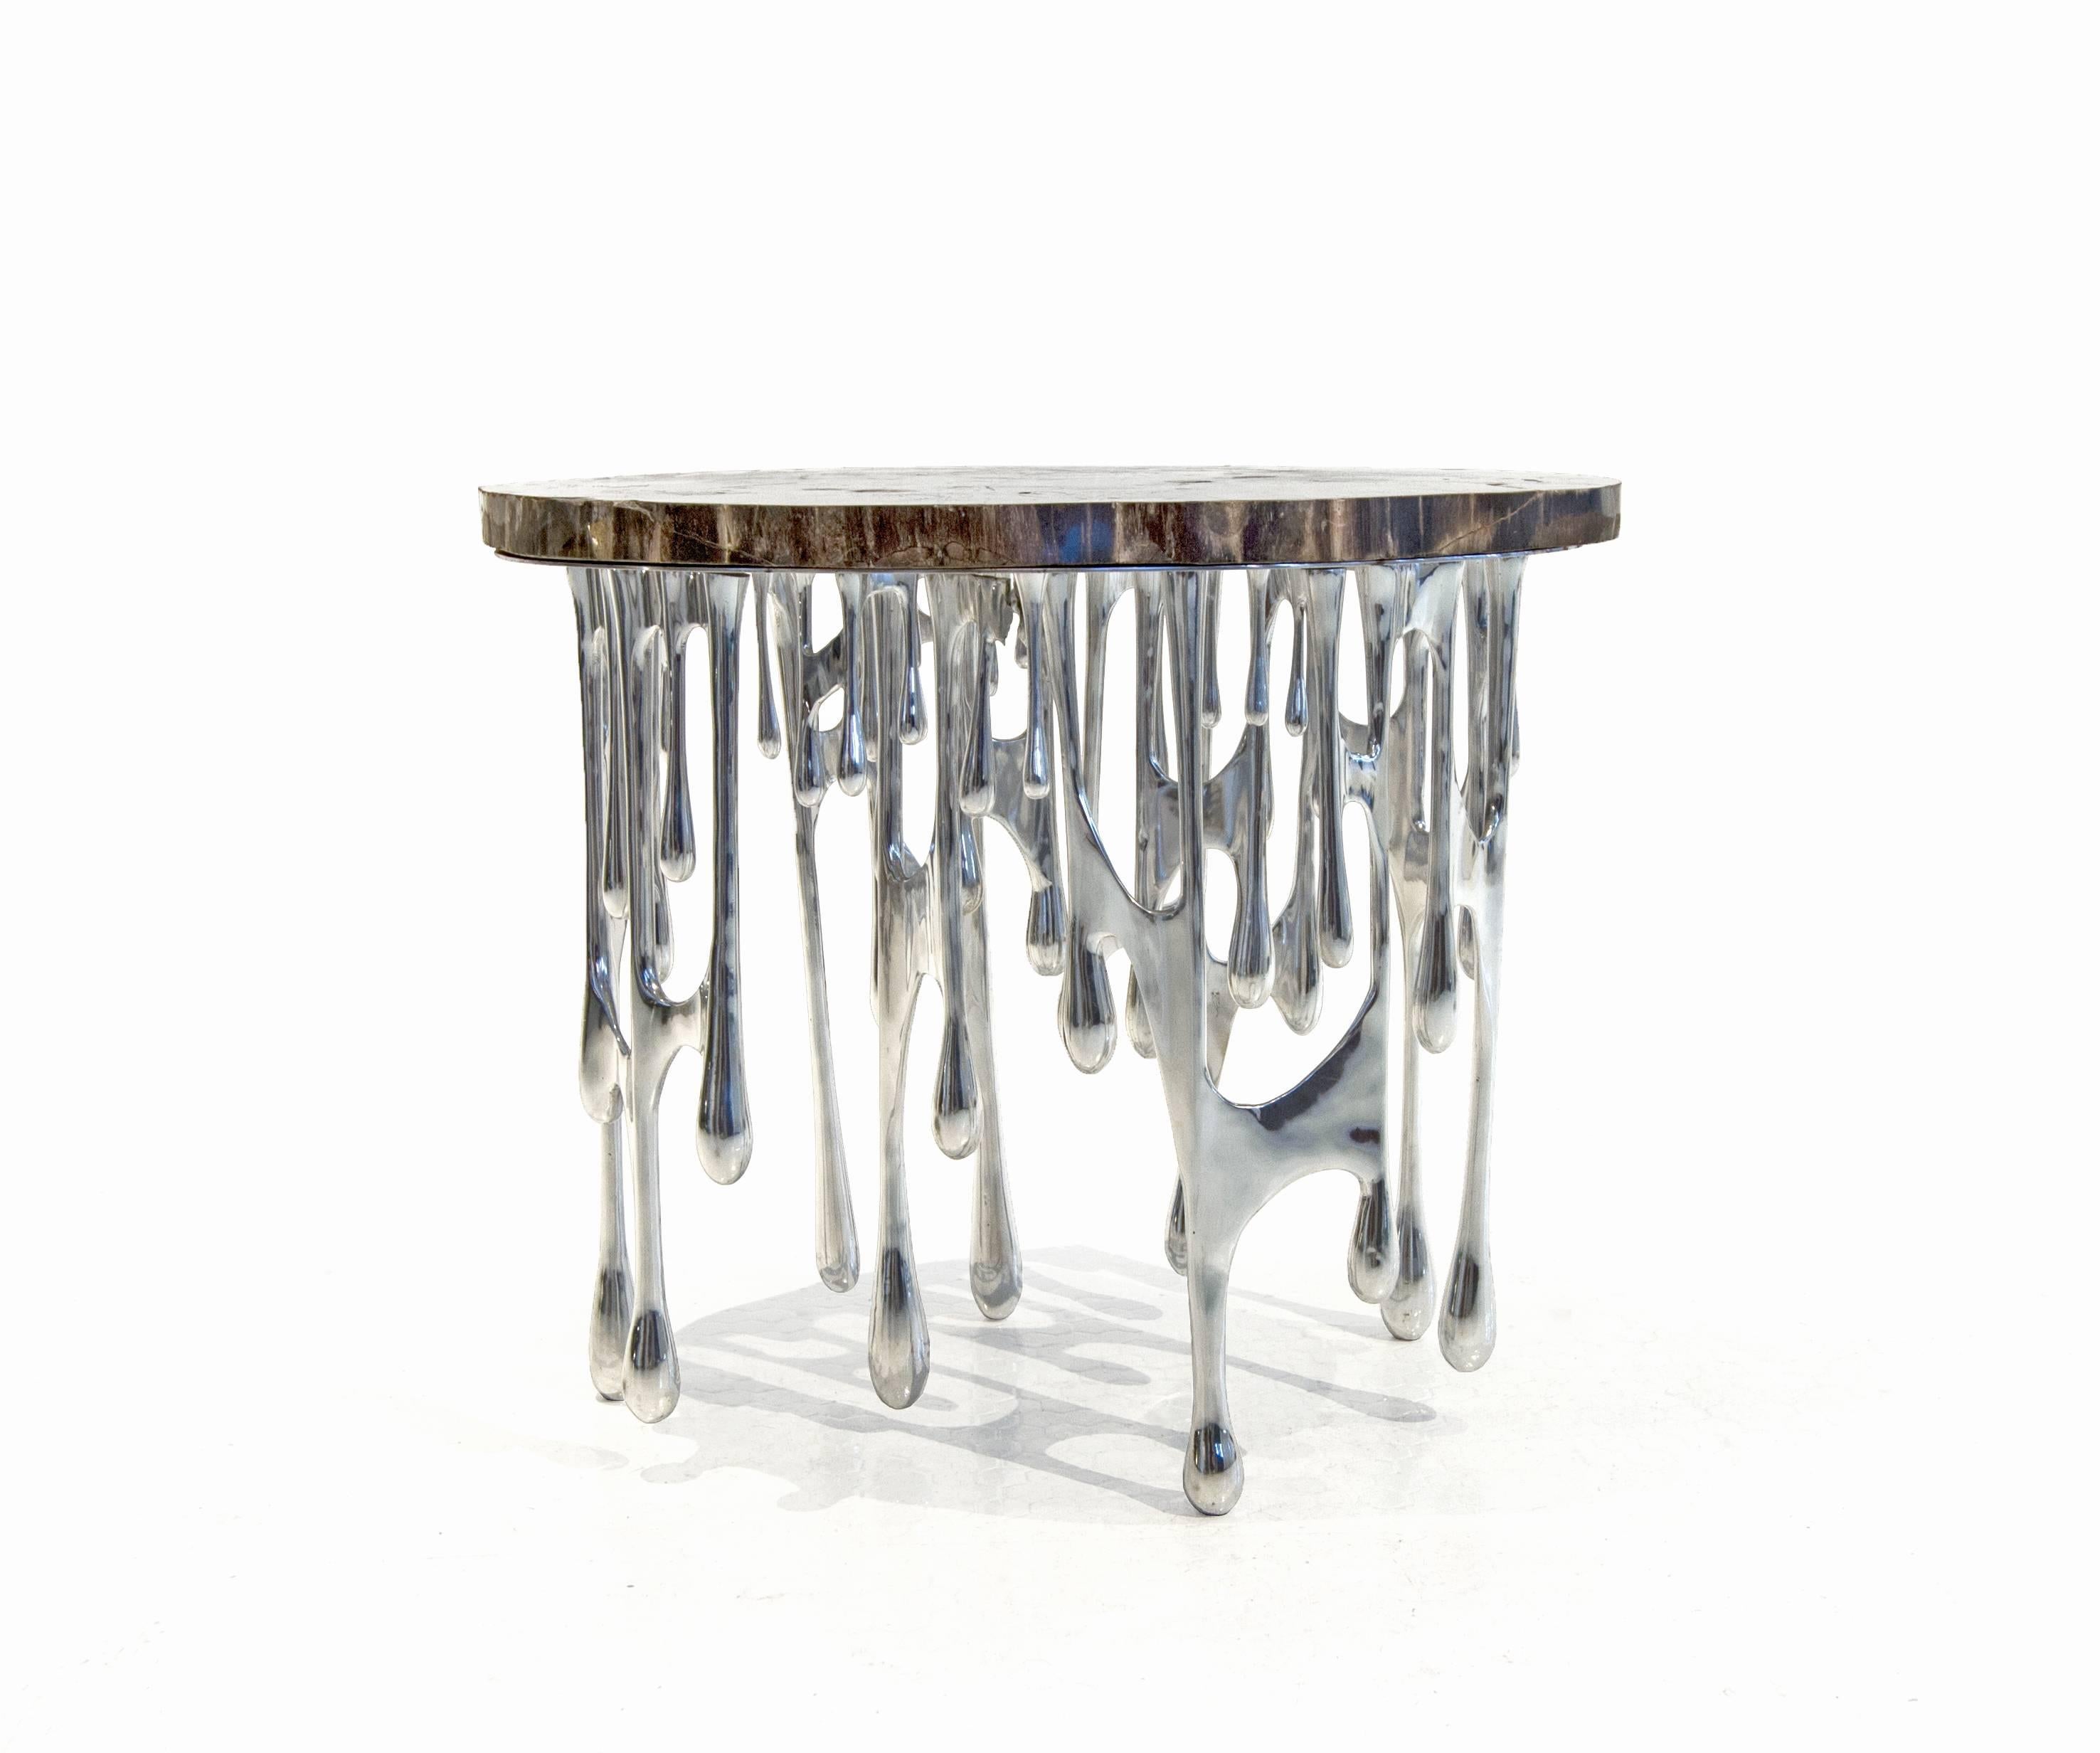 La Dripping Table fusionne le zinc (un produit de notre ère technicienne) et le bois pétrifié (un matériau intemporel).  Le zinc qui fond et coule symbolise l'émergence d'un nouveau monde.

La Dripping Table fait partie de la série Morphogen de John